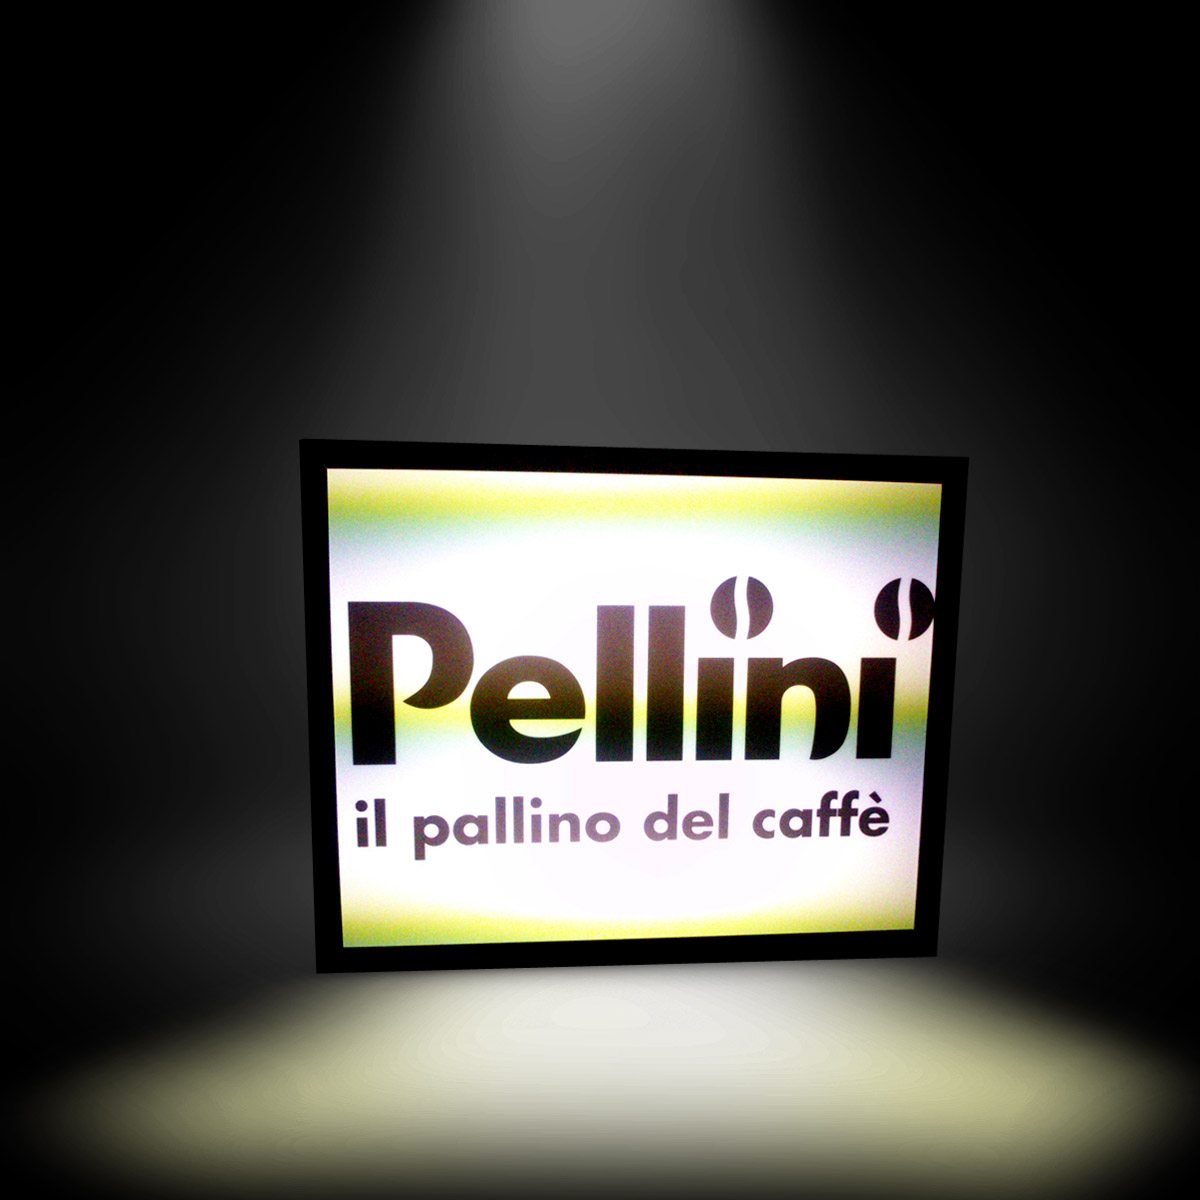 Pellini világítótábla